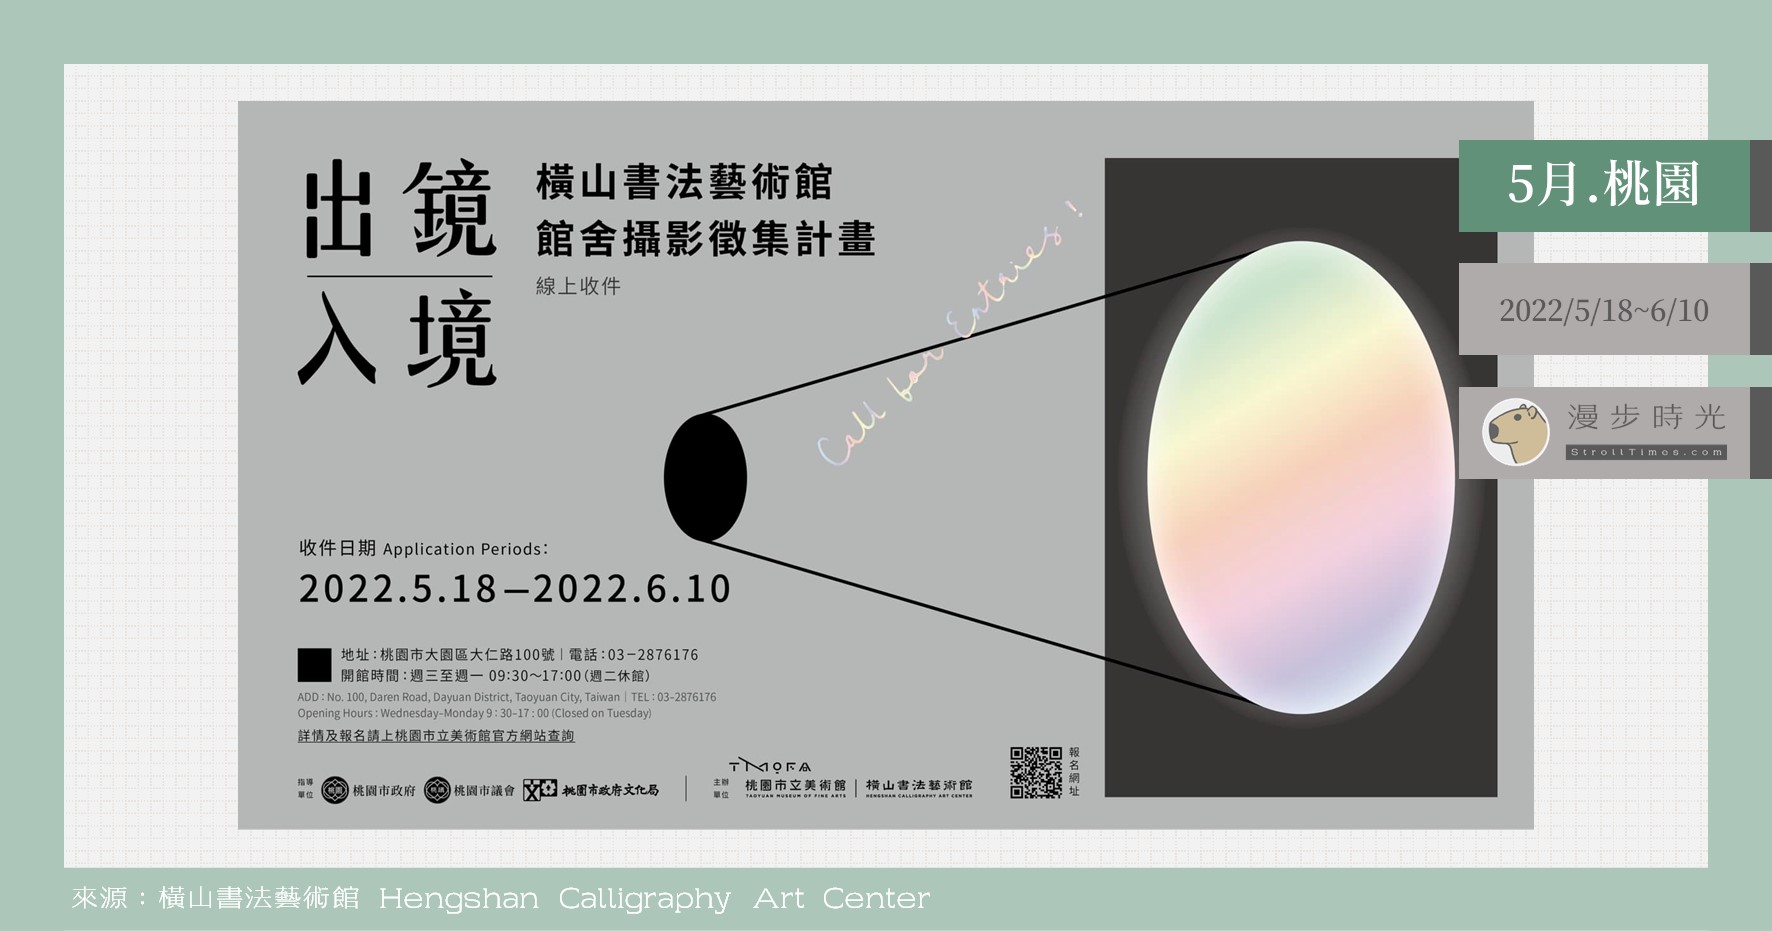 今日熱門文章：即刻募集！橫山書藝館「出鏡入境」攝影徵集，優選作品有機會印製成入場門票喔！